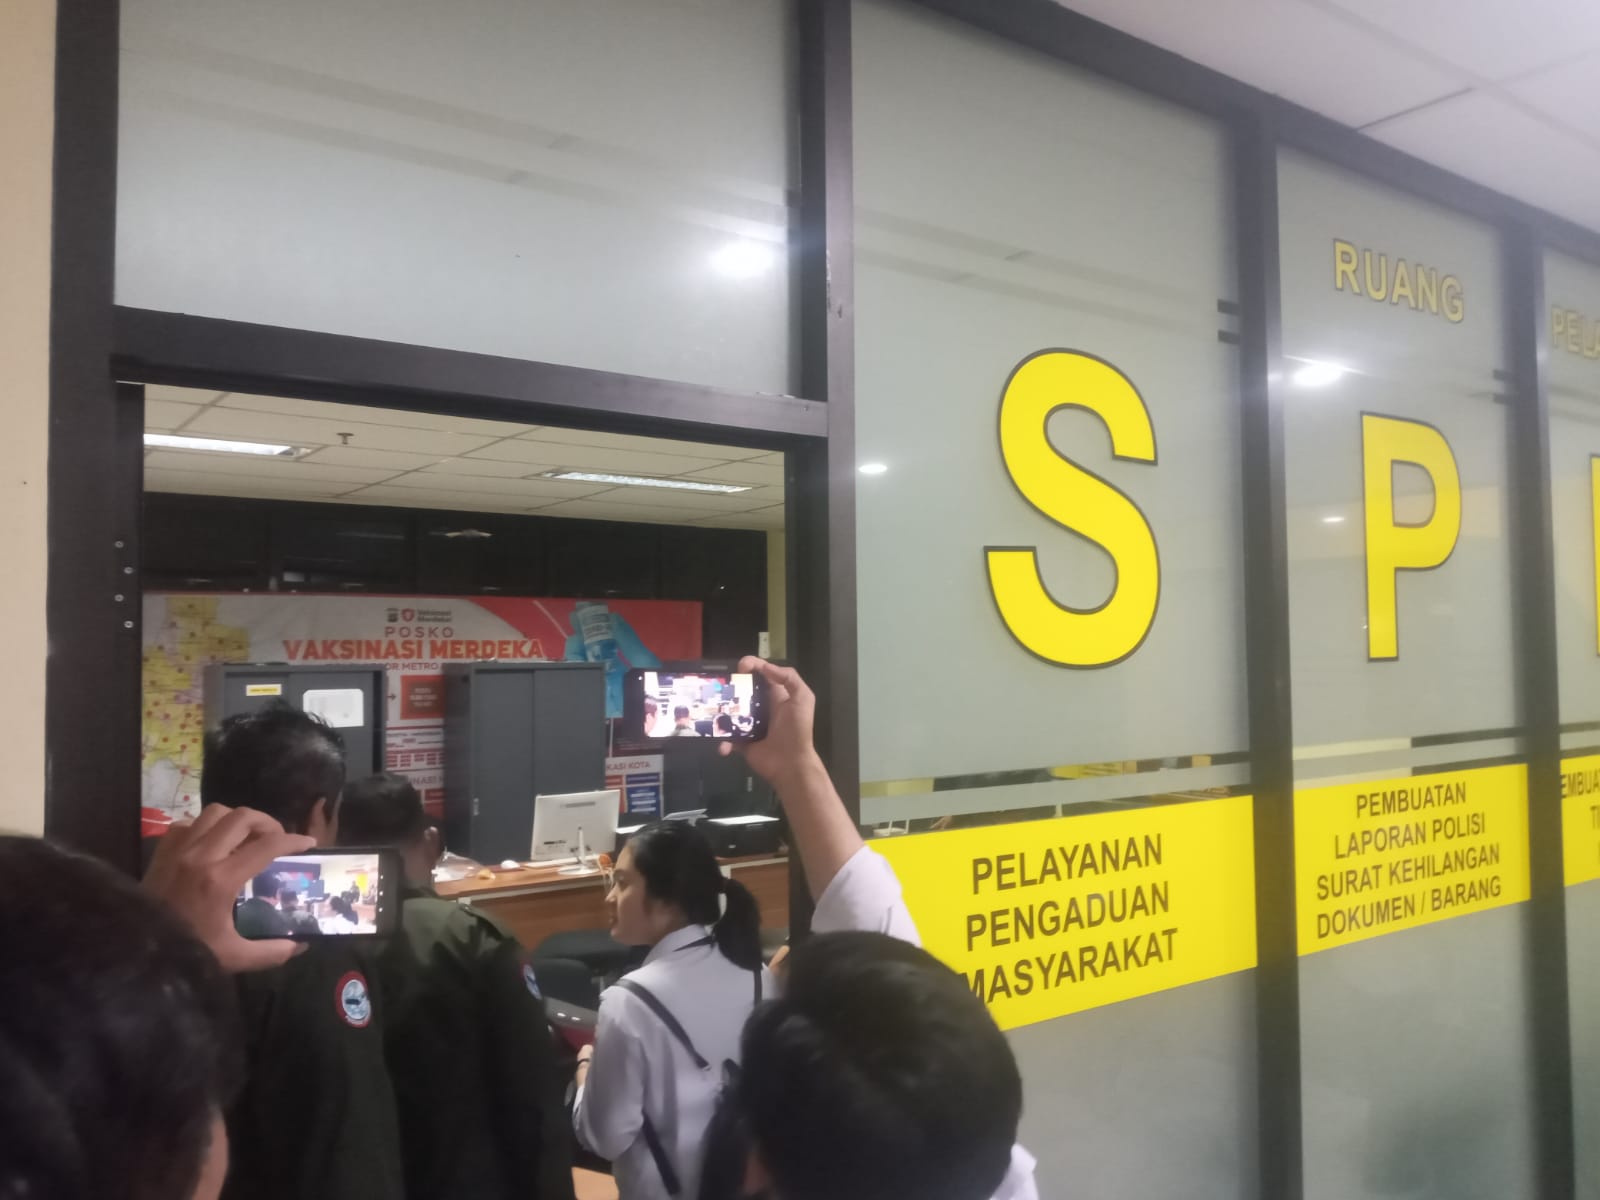 Laporan soal Oknum Ormas Ditolak di Polrestro Bekasi Kota, Ketum PKN Segera Lapor ke Polda